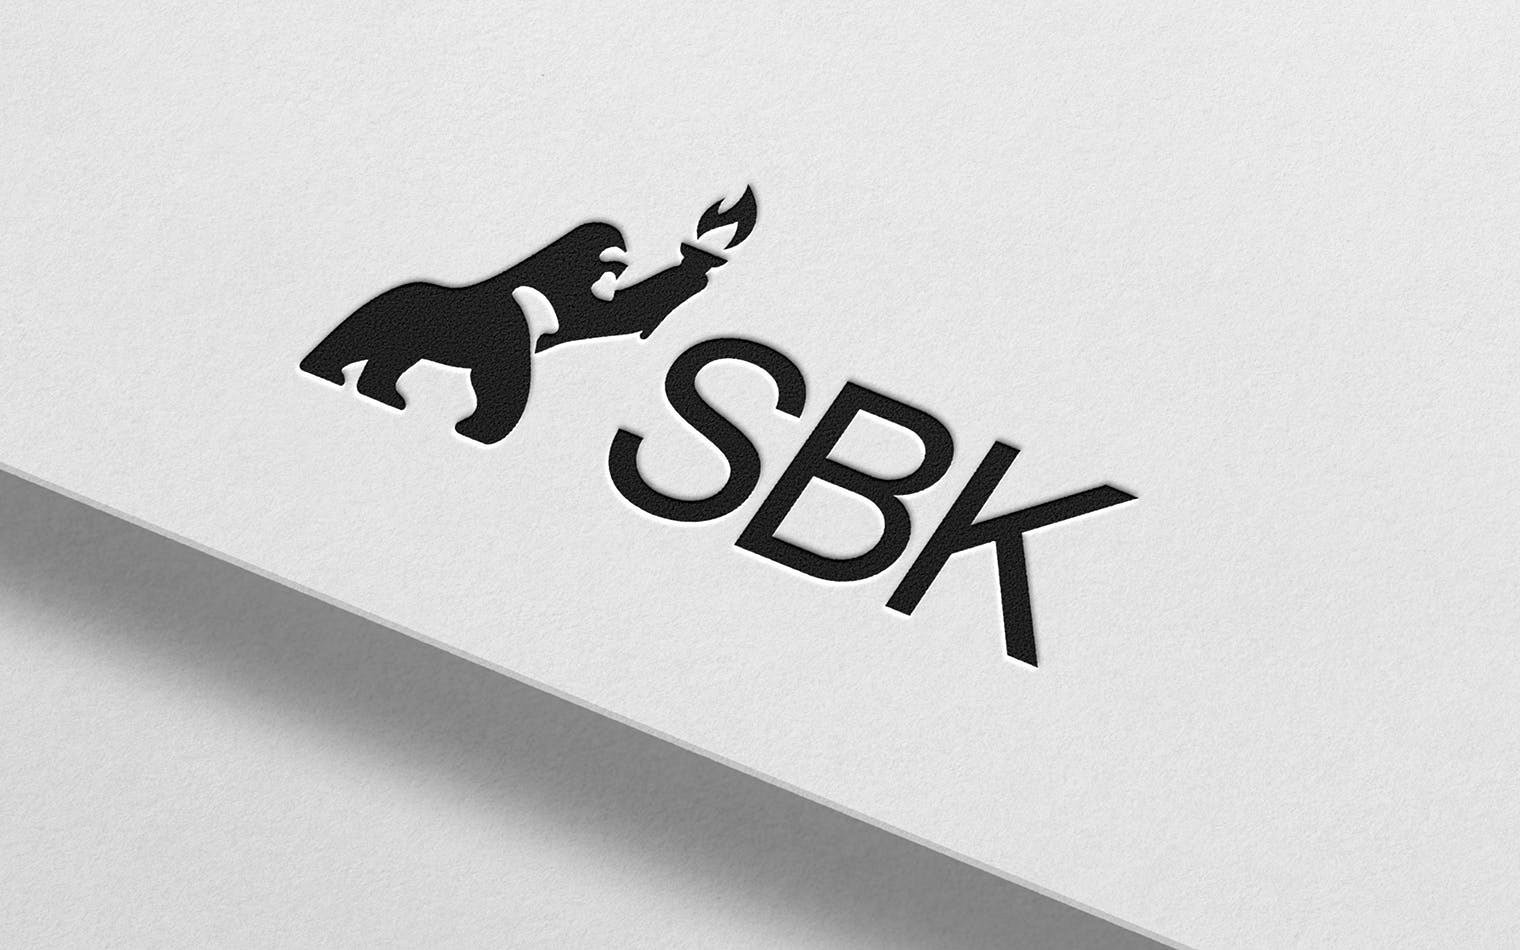 SBK | Steve Edge Design